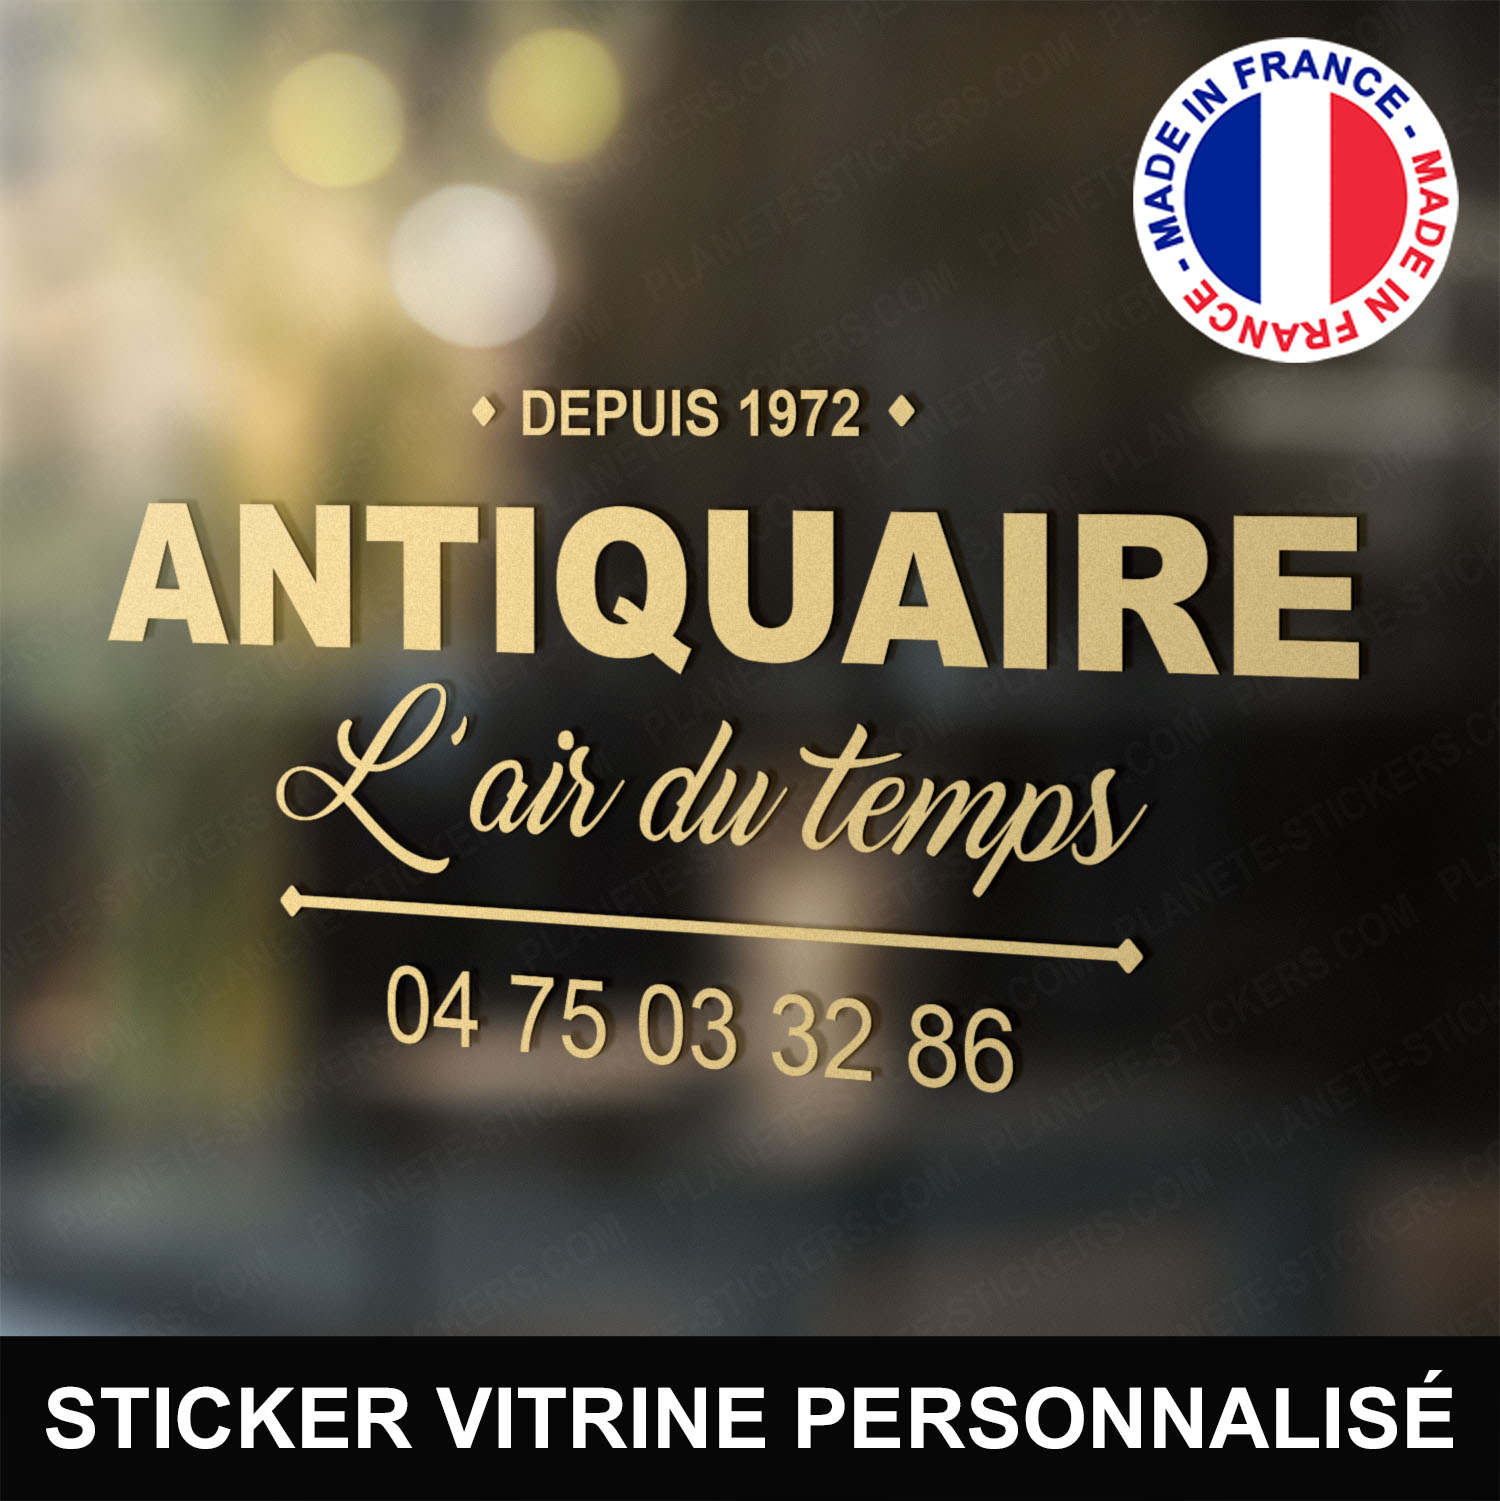 ref13antiquairevitrine-stickers-antiquaire-vitrine-sticker-personnalisé-autocollant-antiquité-vitrophanie-vitre-professionnel-logo-écriture